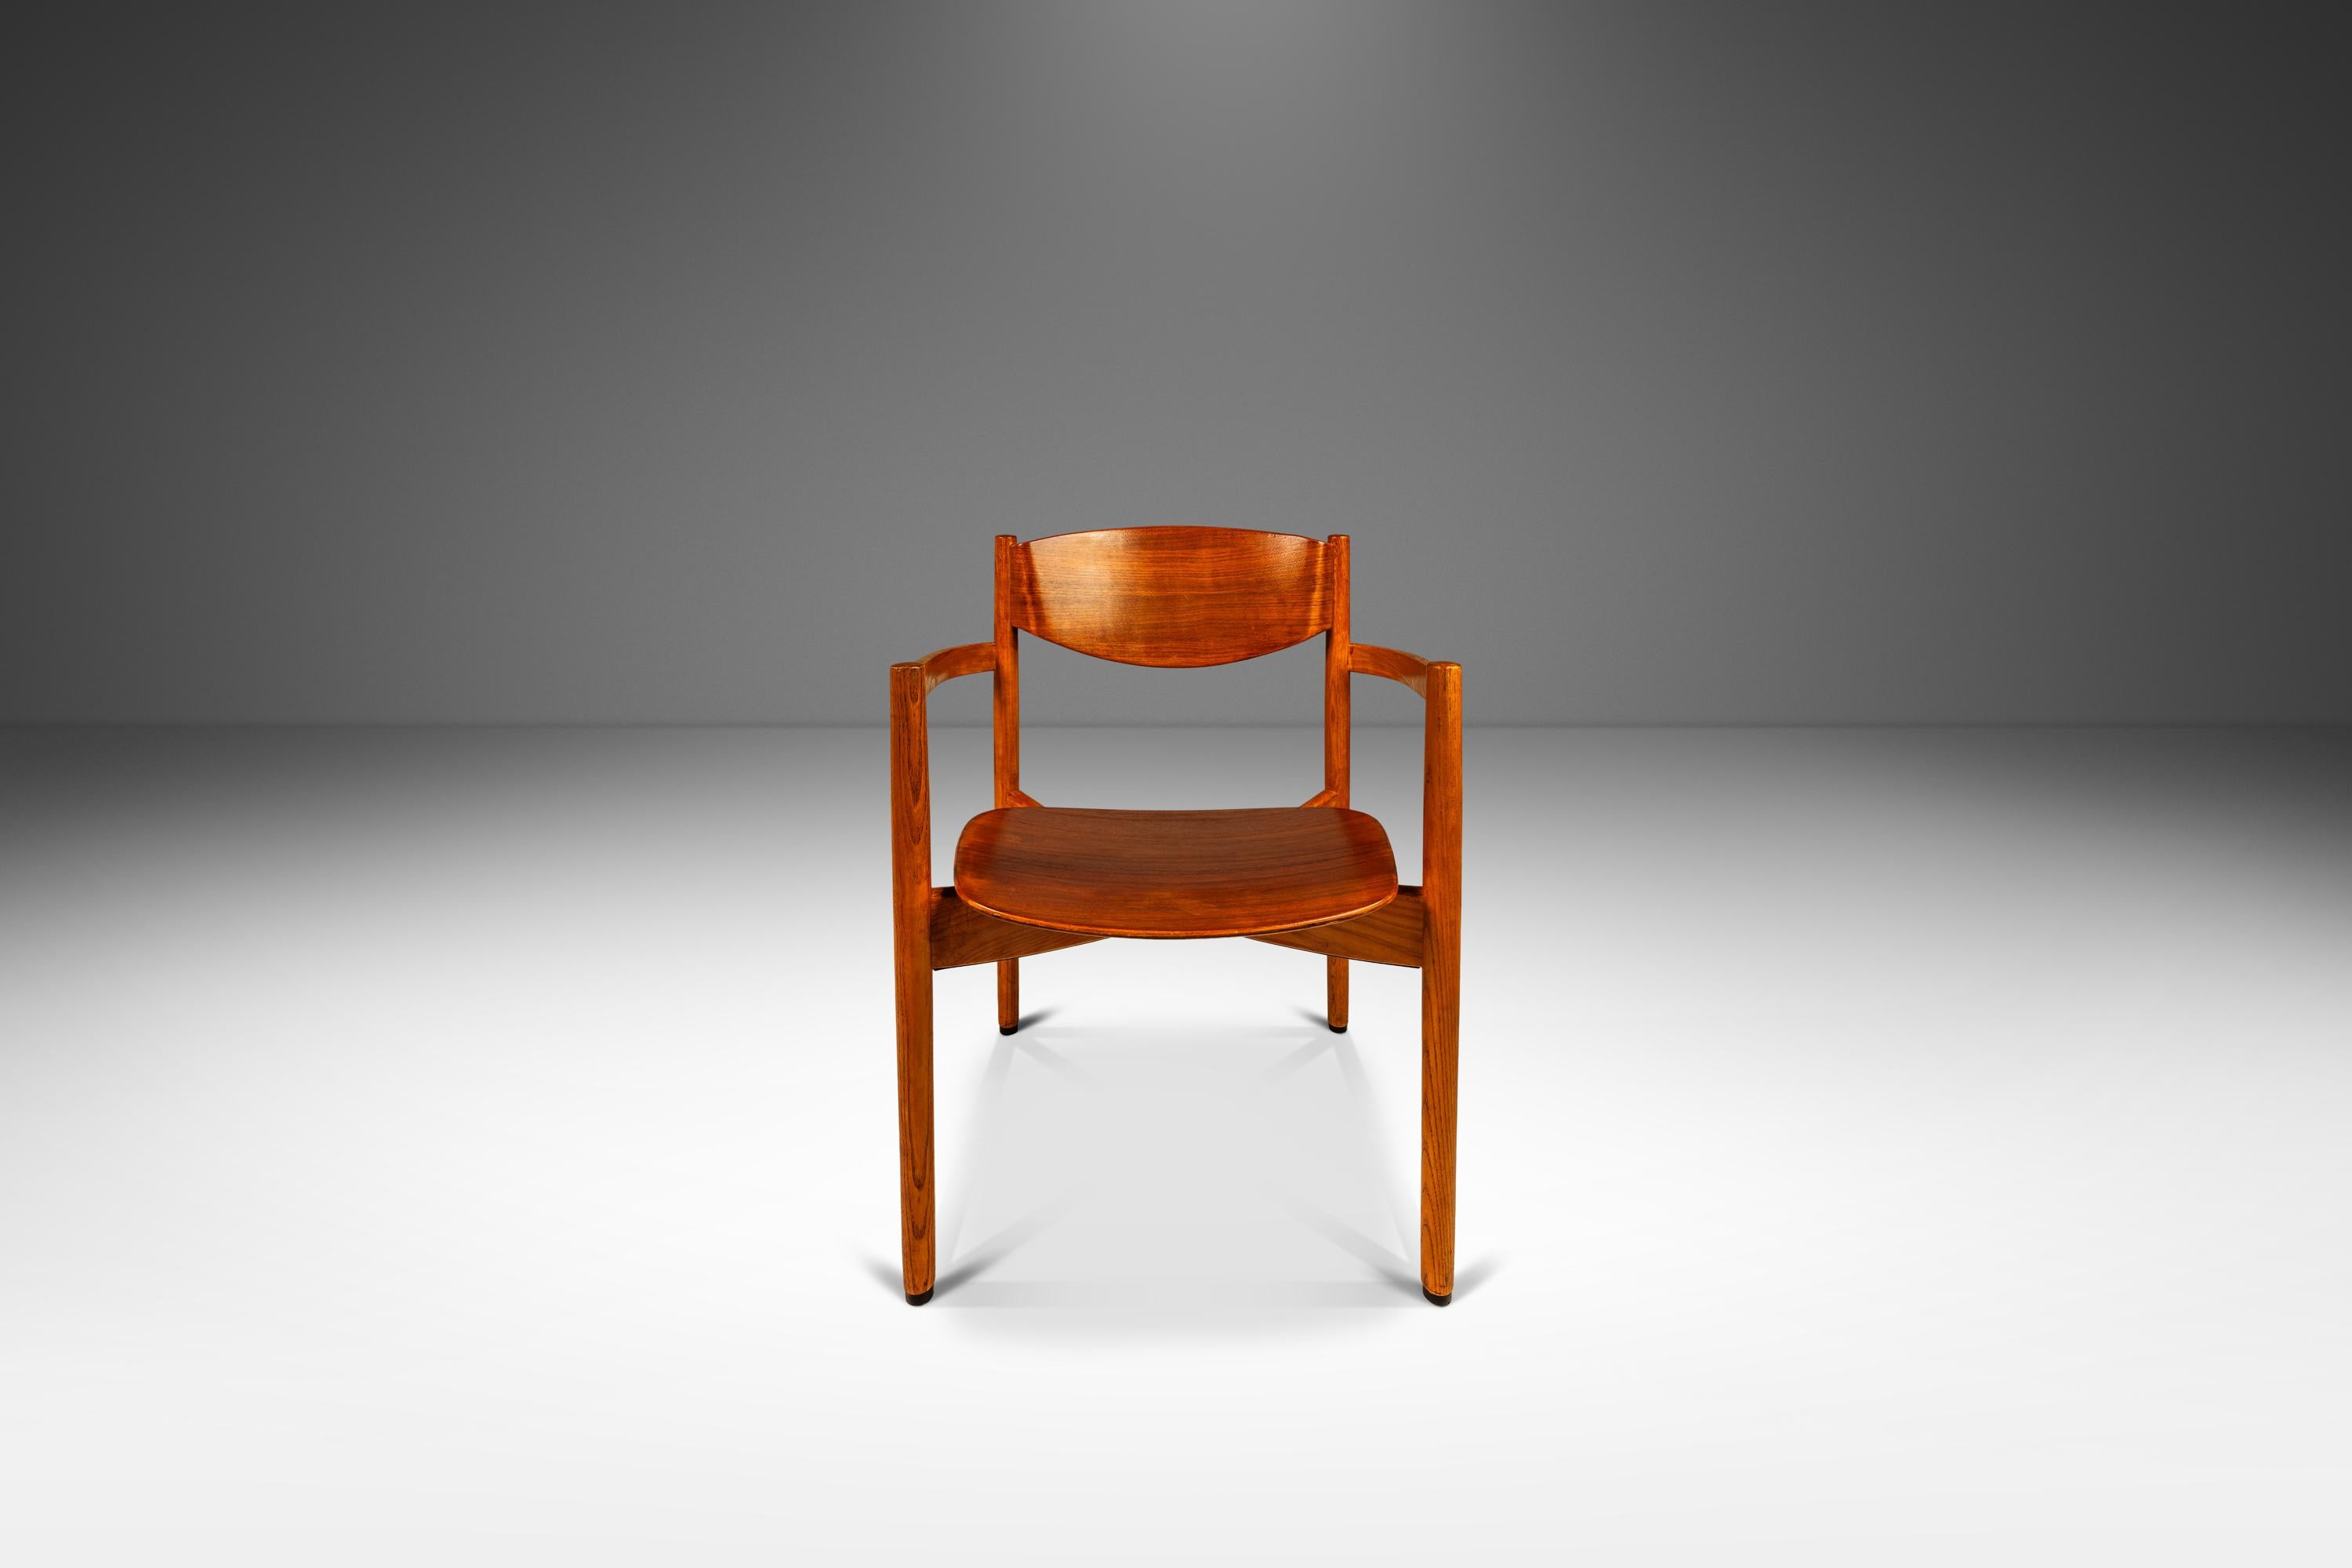 American Single Mid-Century Modern Chair in Oak & Walnut  by Jens Risom, USA, c. 1960s For Sale